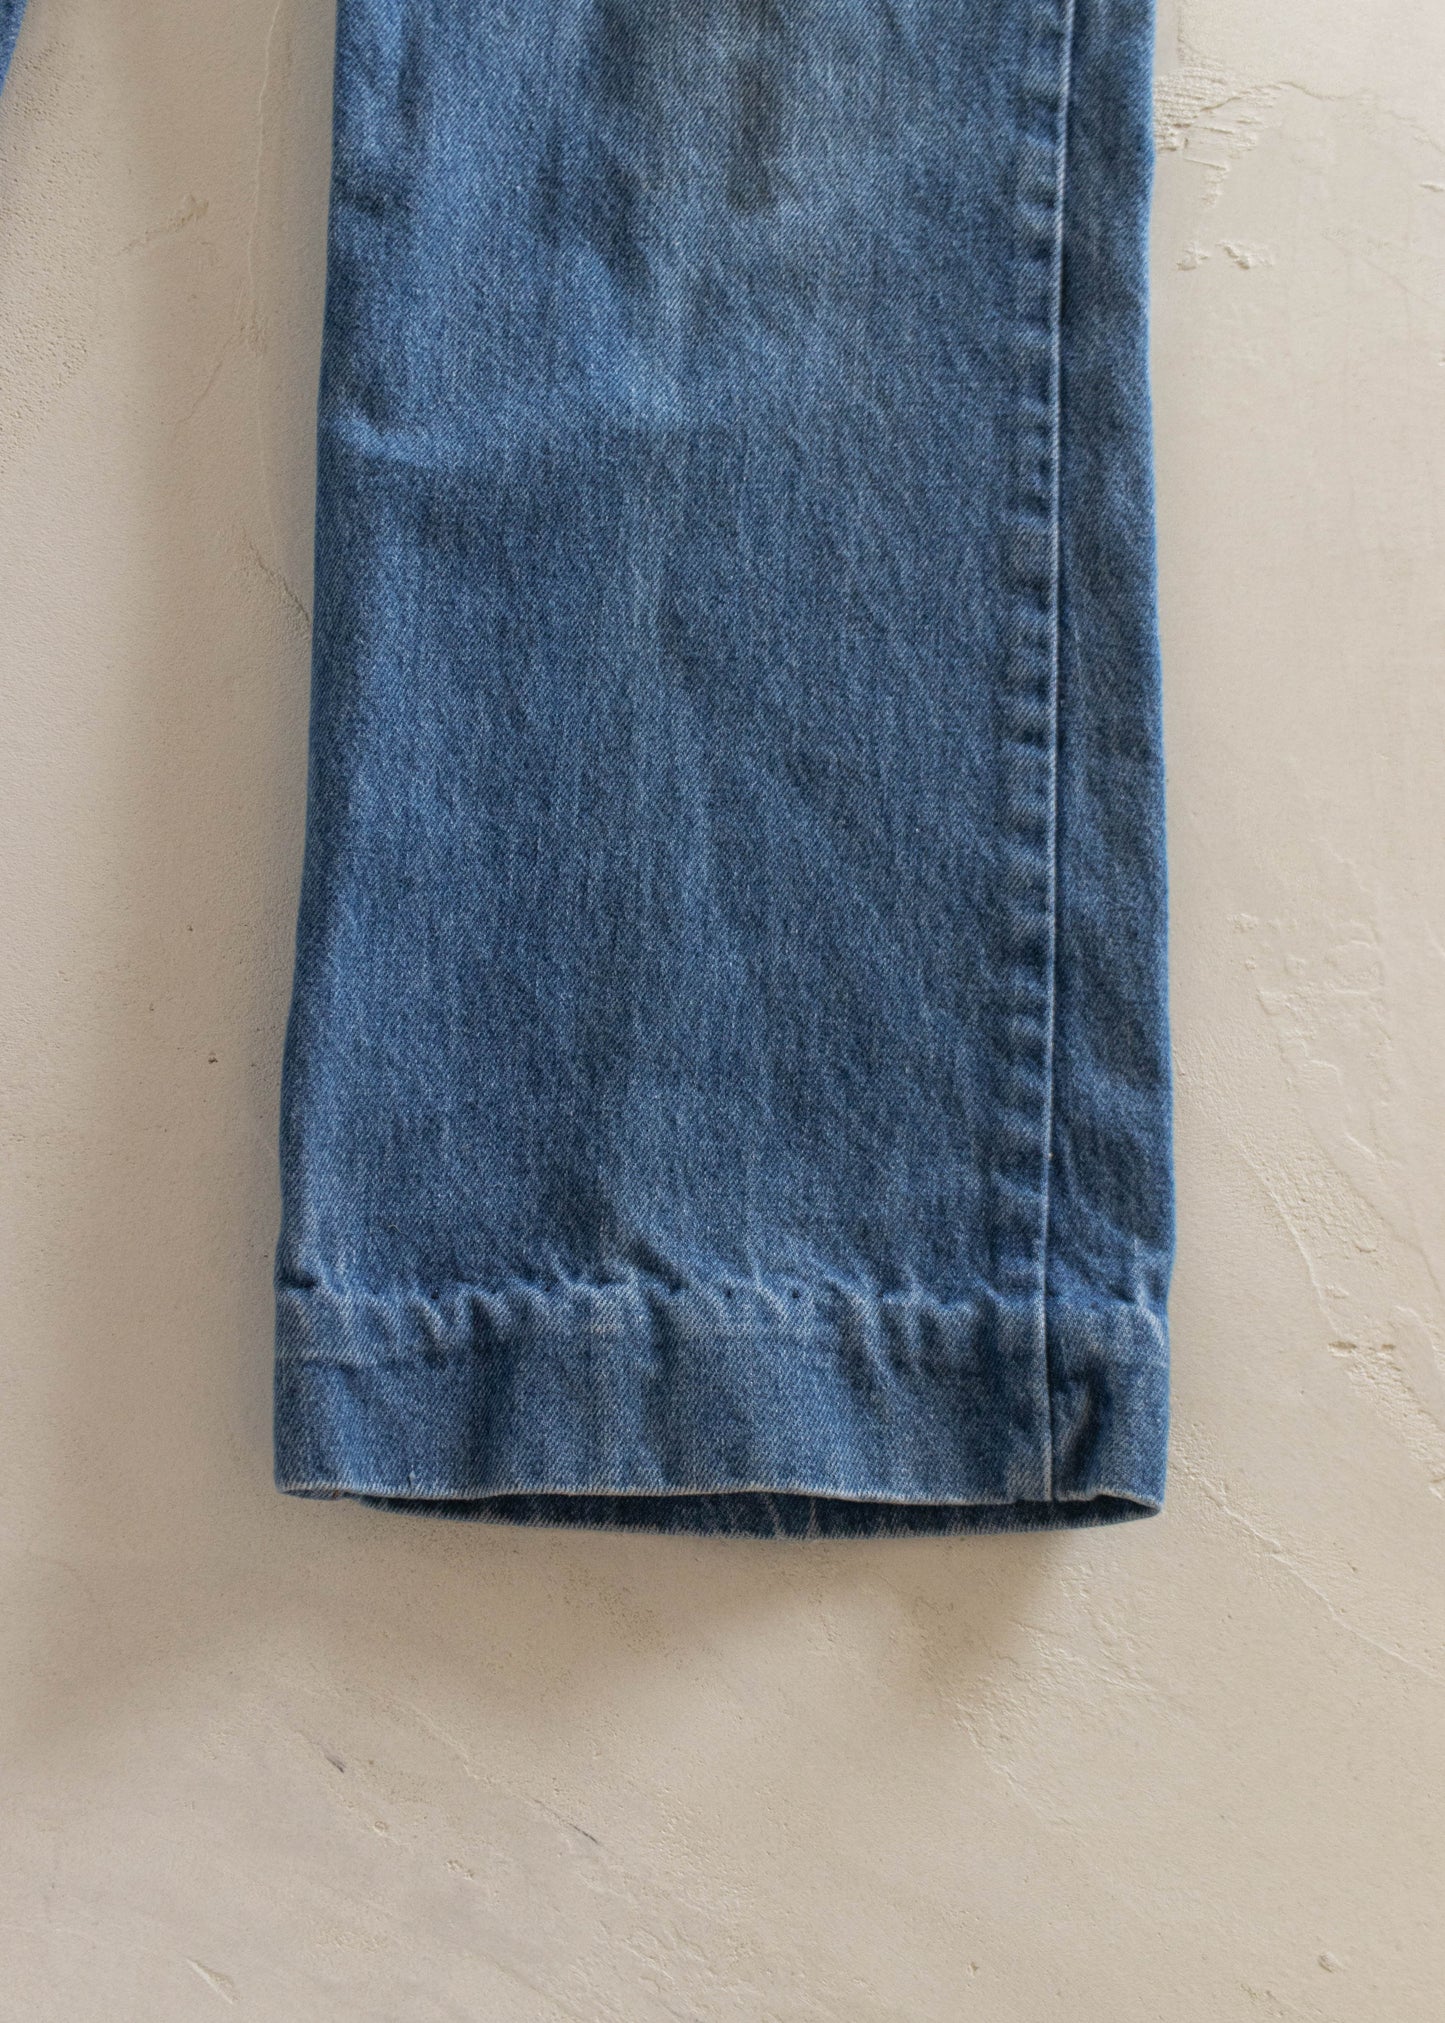 1980s Levi's Orange Tab Midwash Jeans Size Women's 31 Men's 33